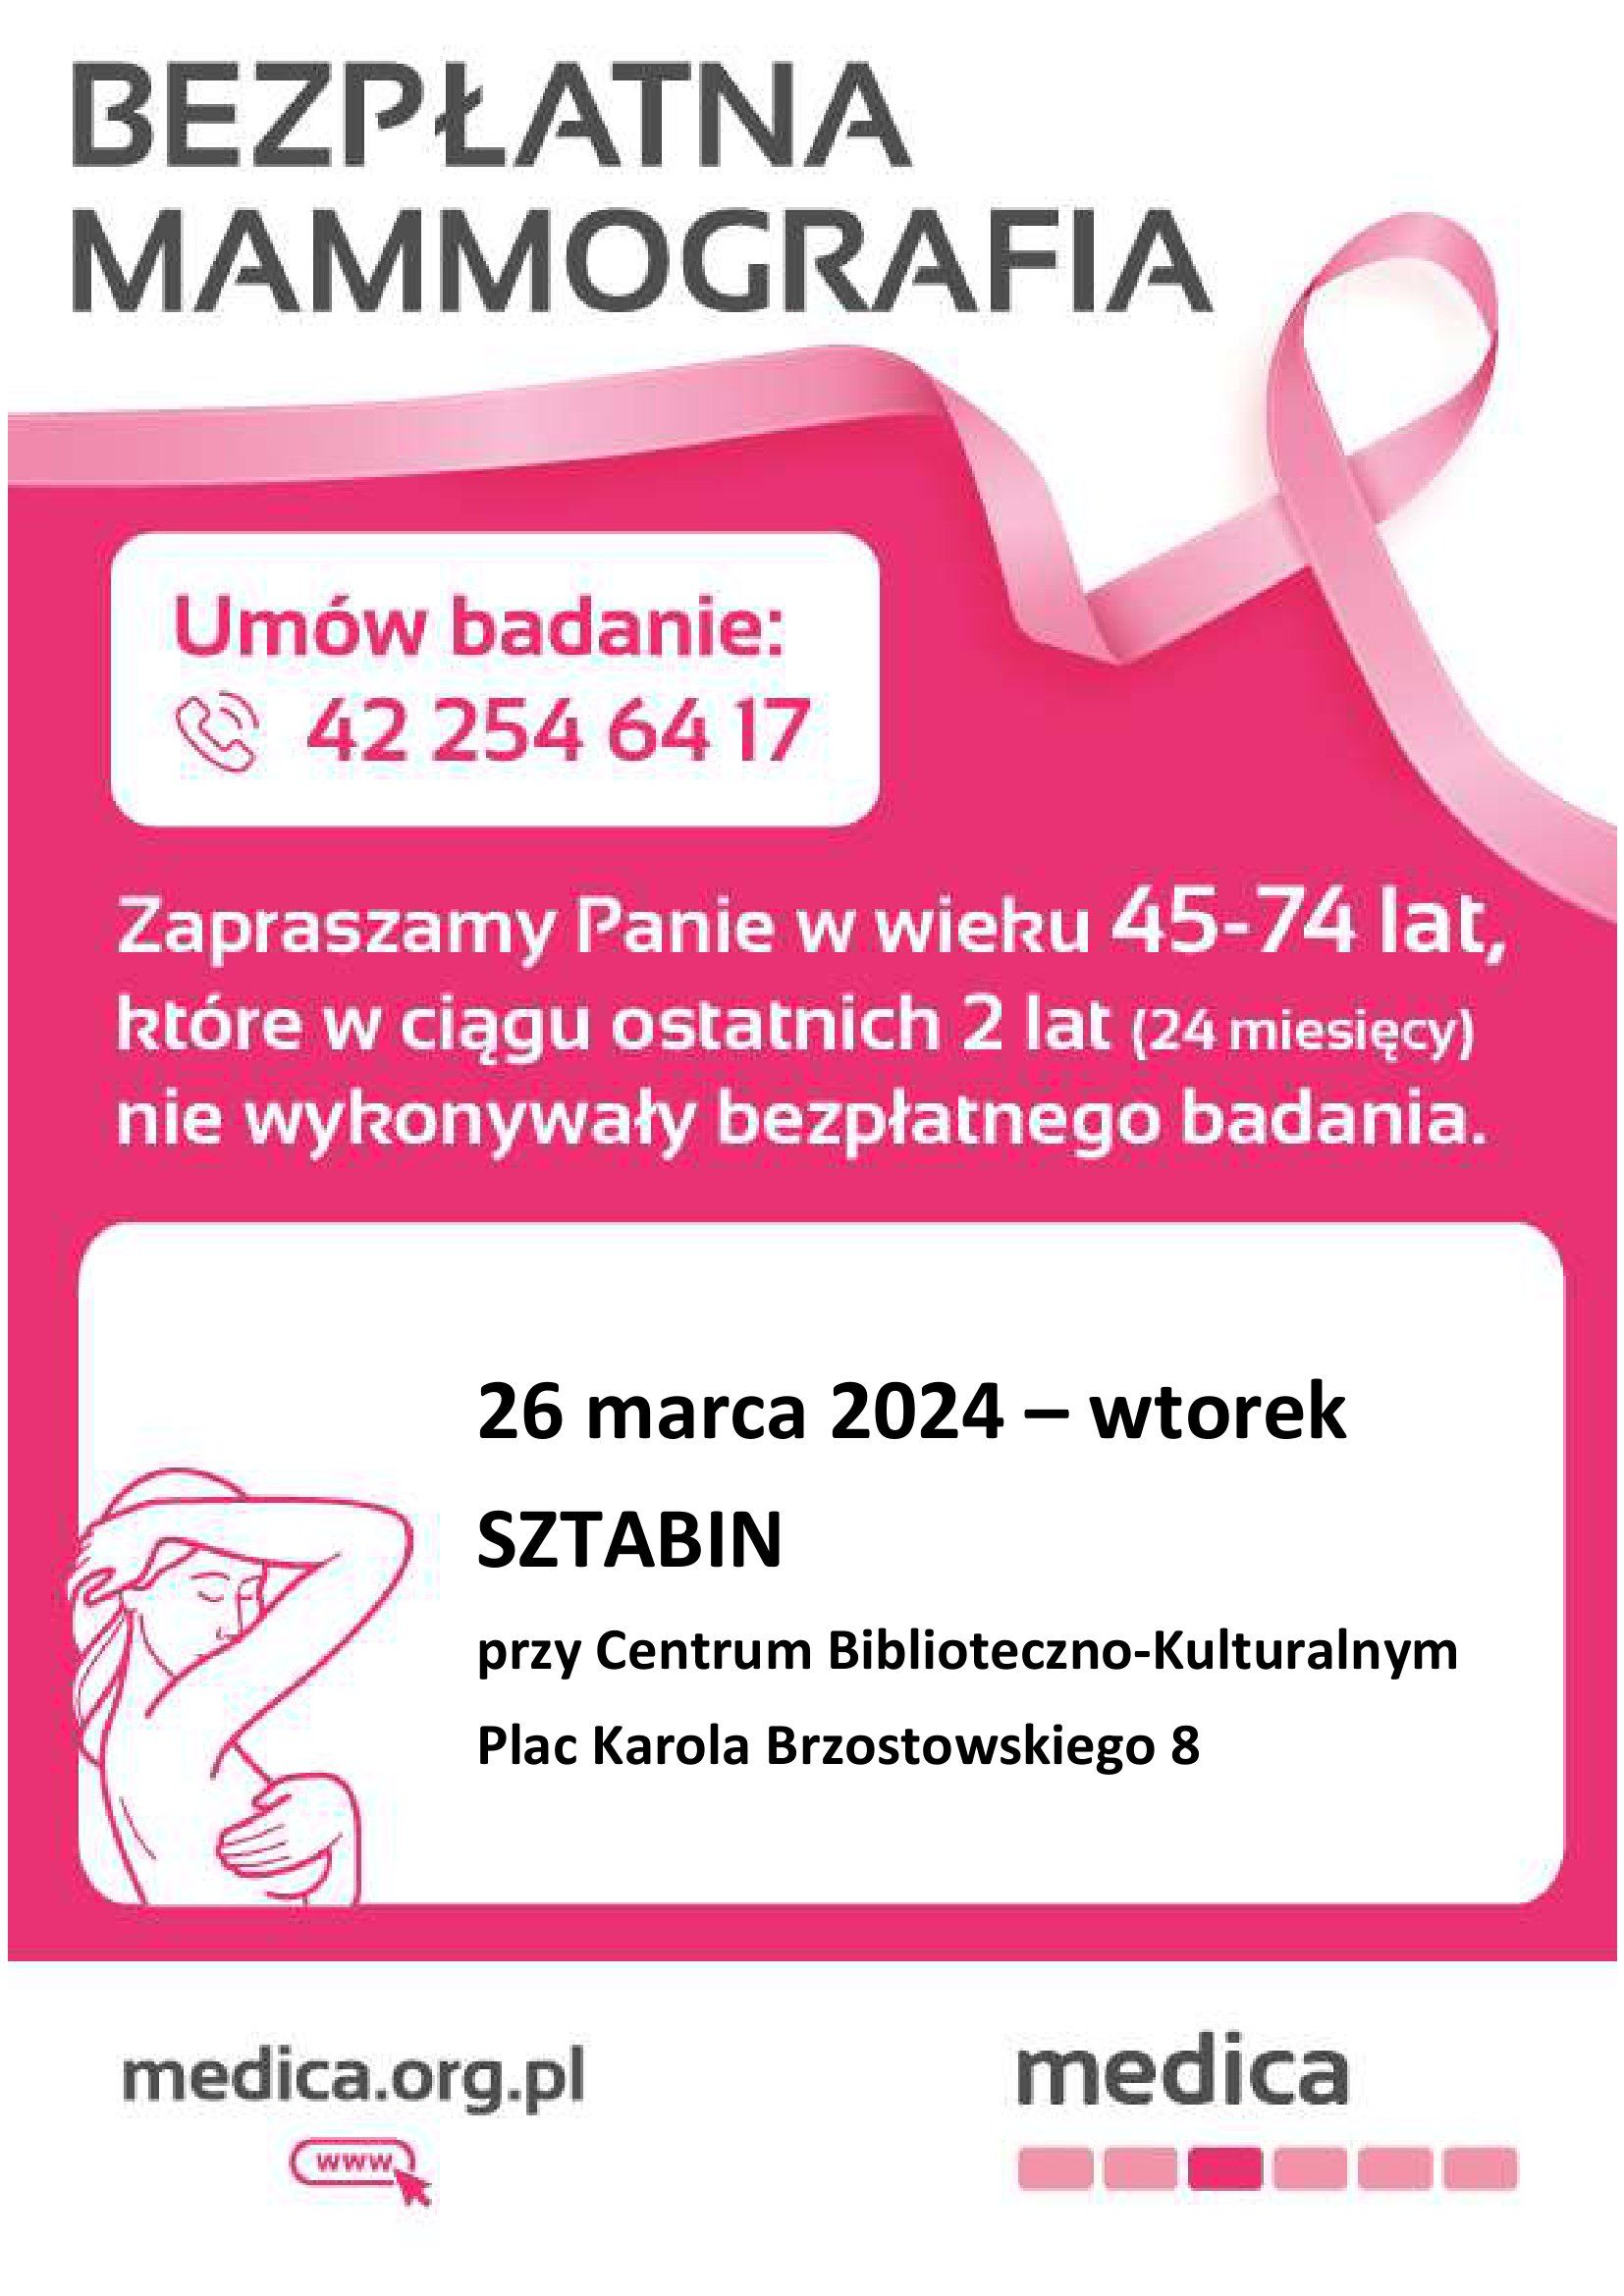 Bezpłatne badania mammograficzne w Sztabinie
Zapraszamy wszystkie mieszkanki gminy Sztabin w wie...